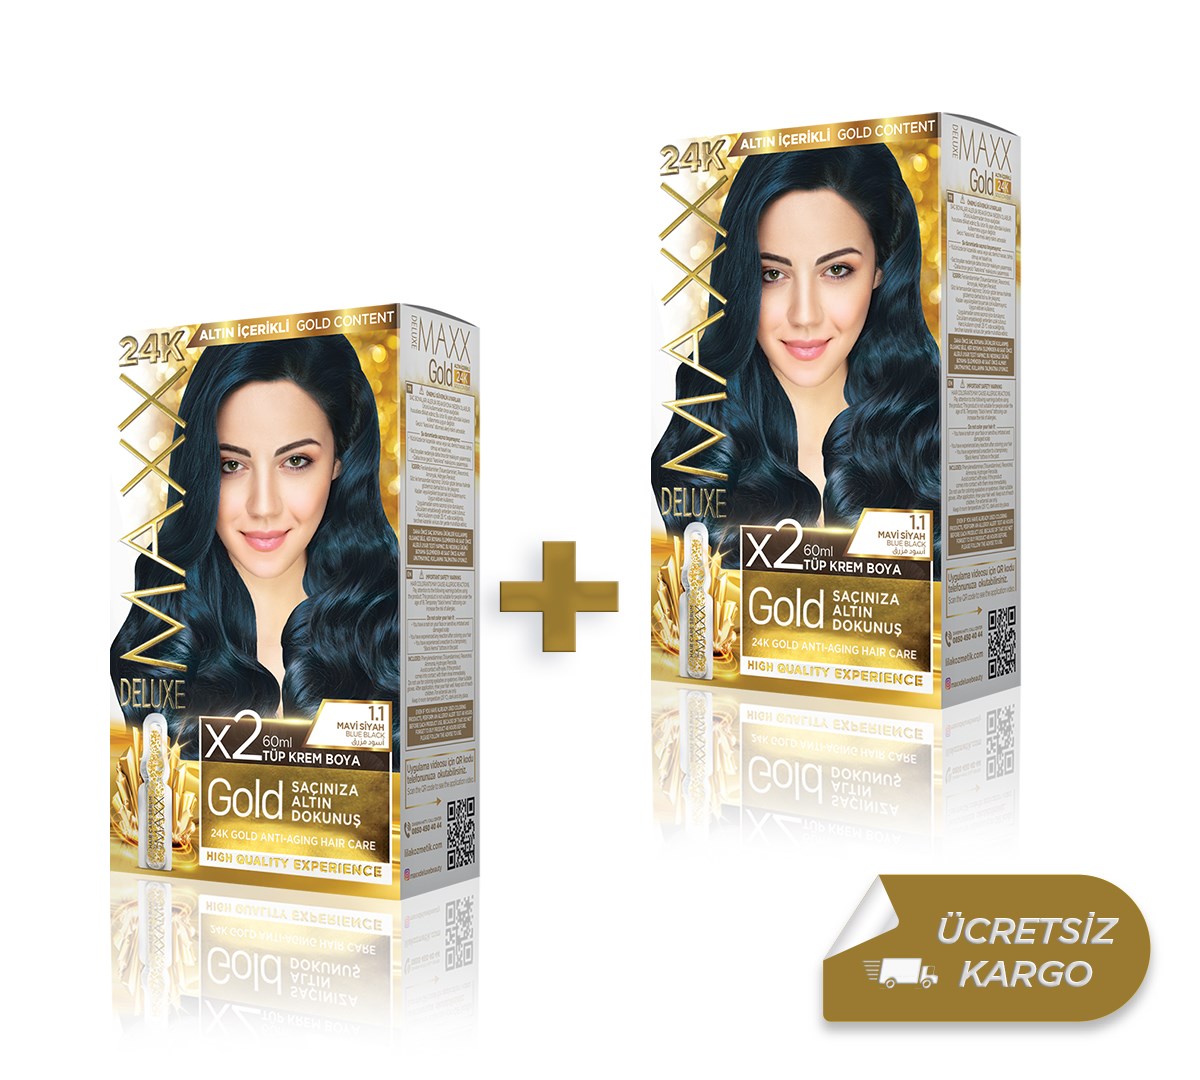 Maxx Deluxe Golden Beauty Saç Boyası | 24K Altın İçerikli Saç Boyası